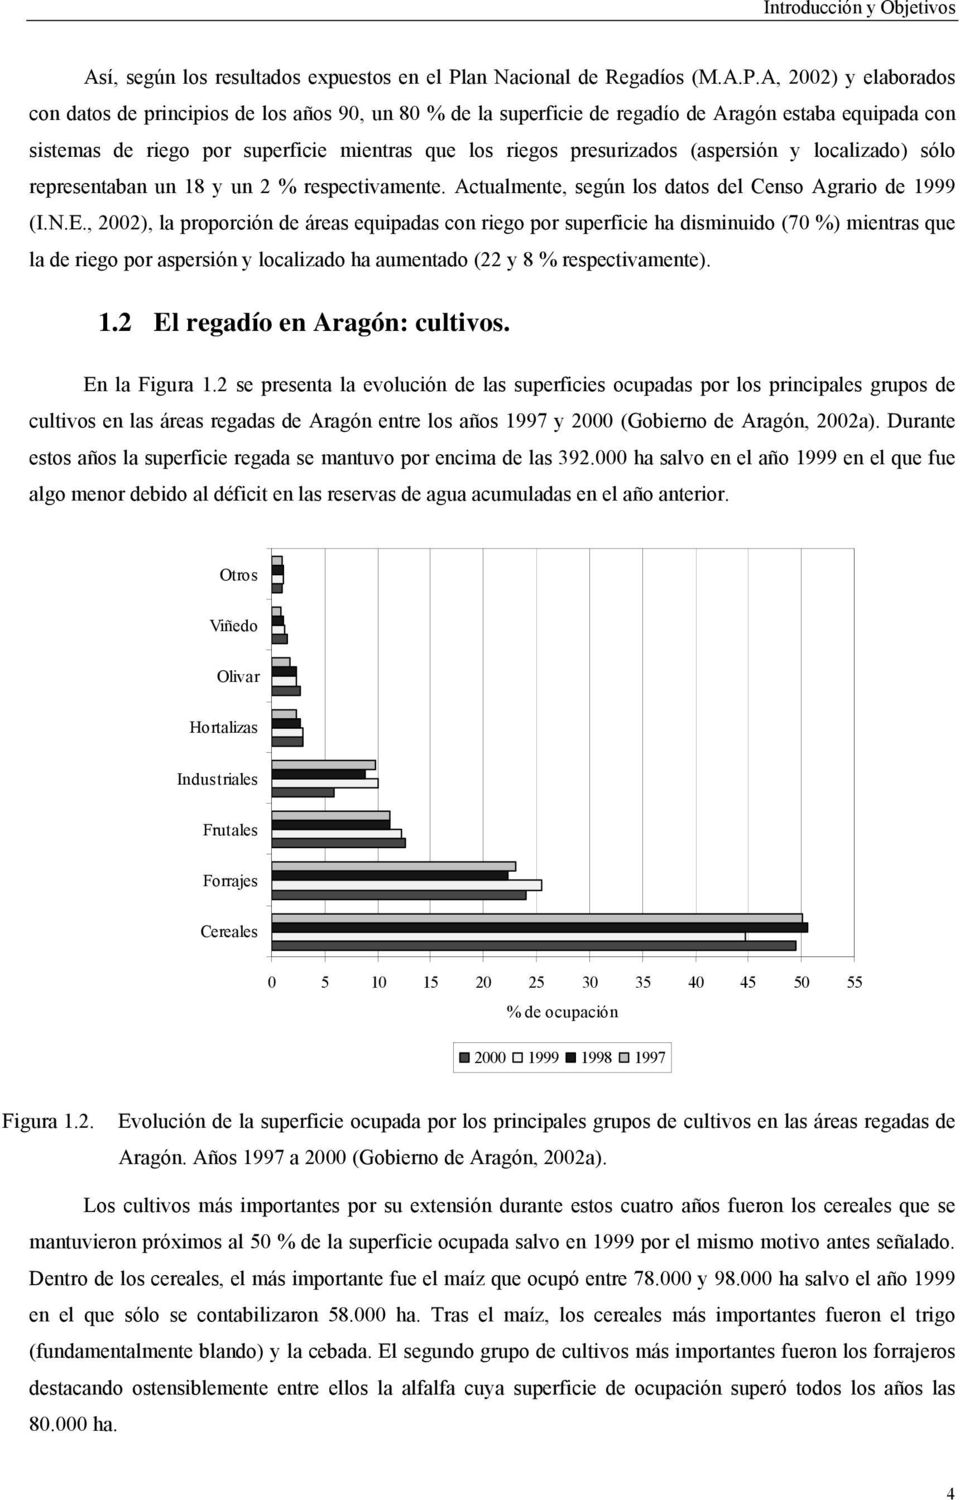 A, 2002) y elaborados con datos de principios de los años 90, un 80 % de la superficie de regadío de Aragón estaba equipada con sistemas de riego por superficie mientras que los riegos presurizados